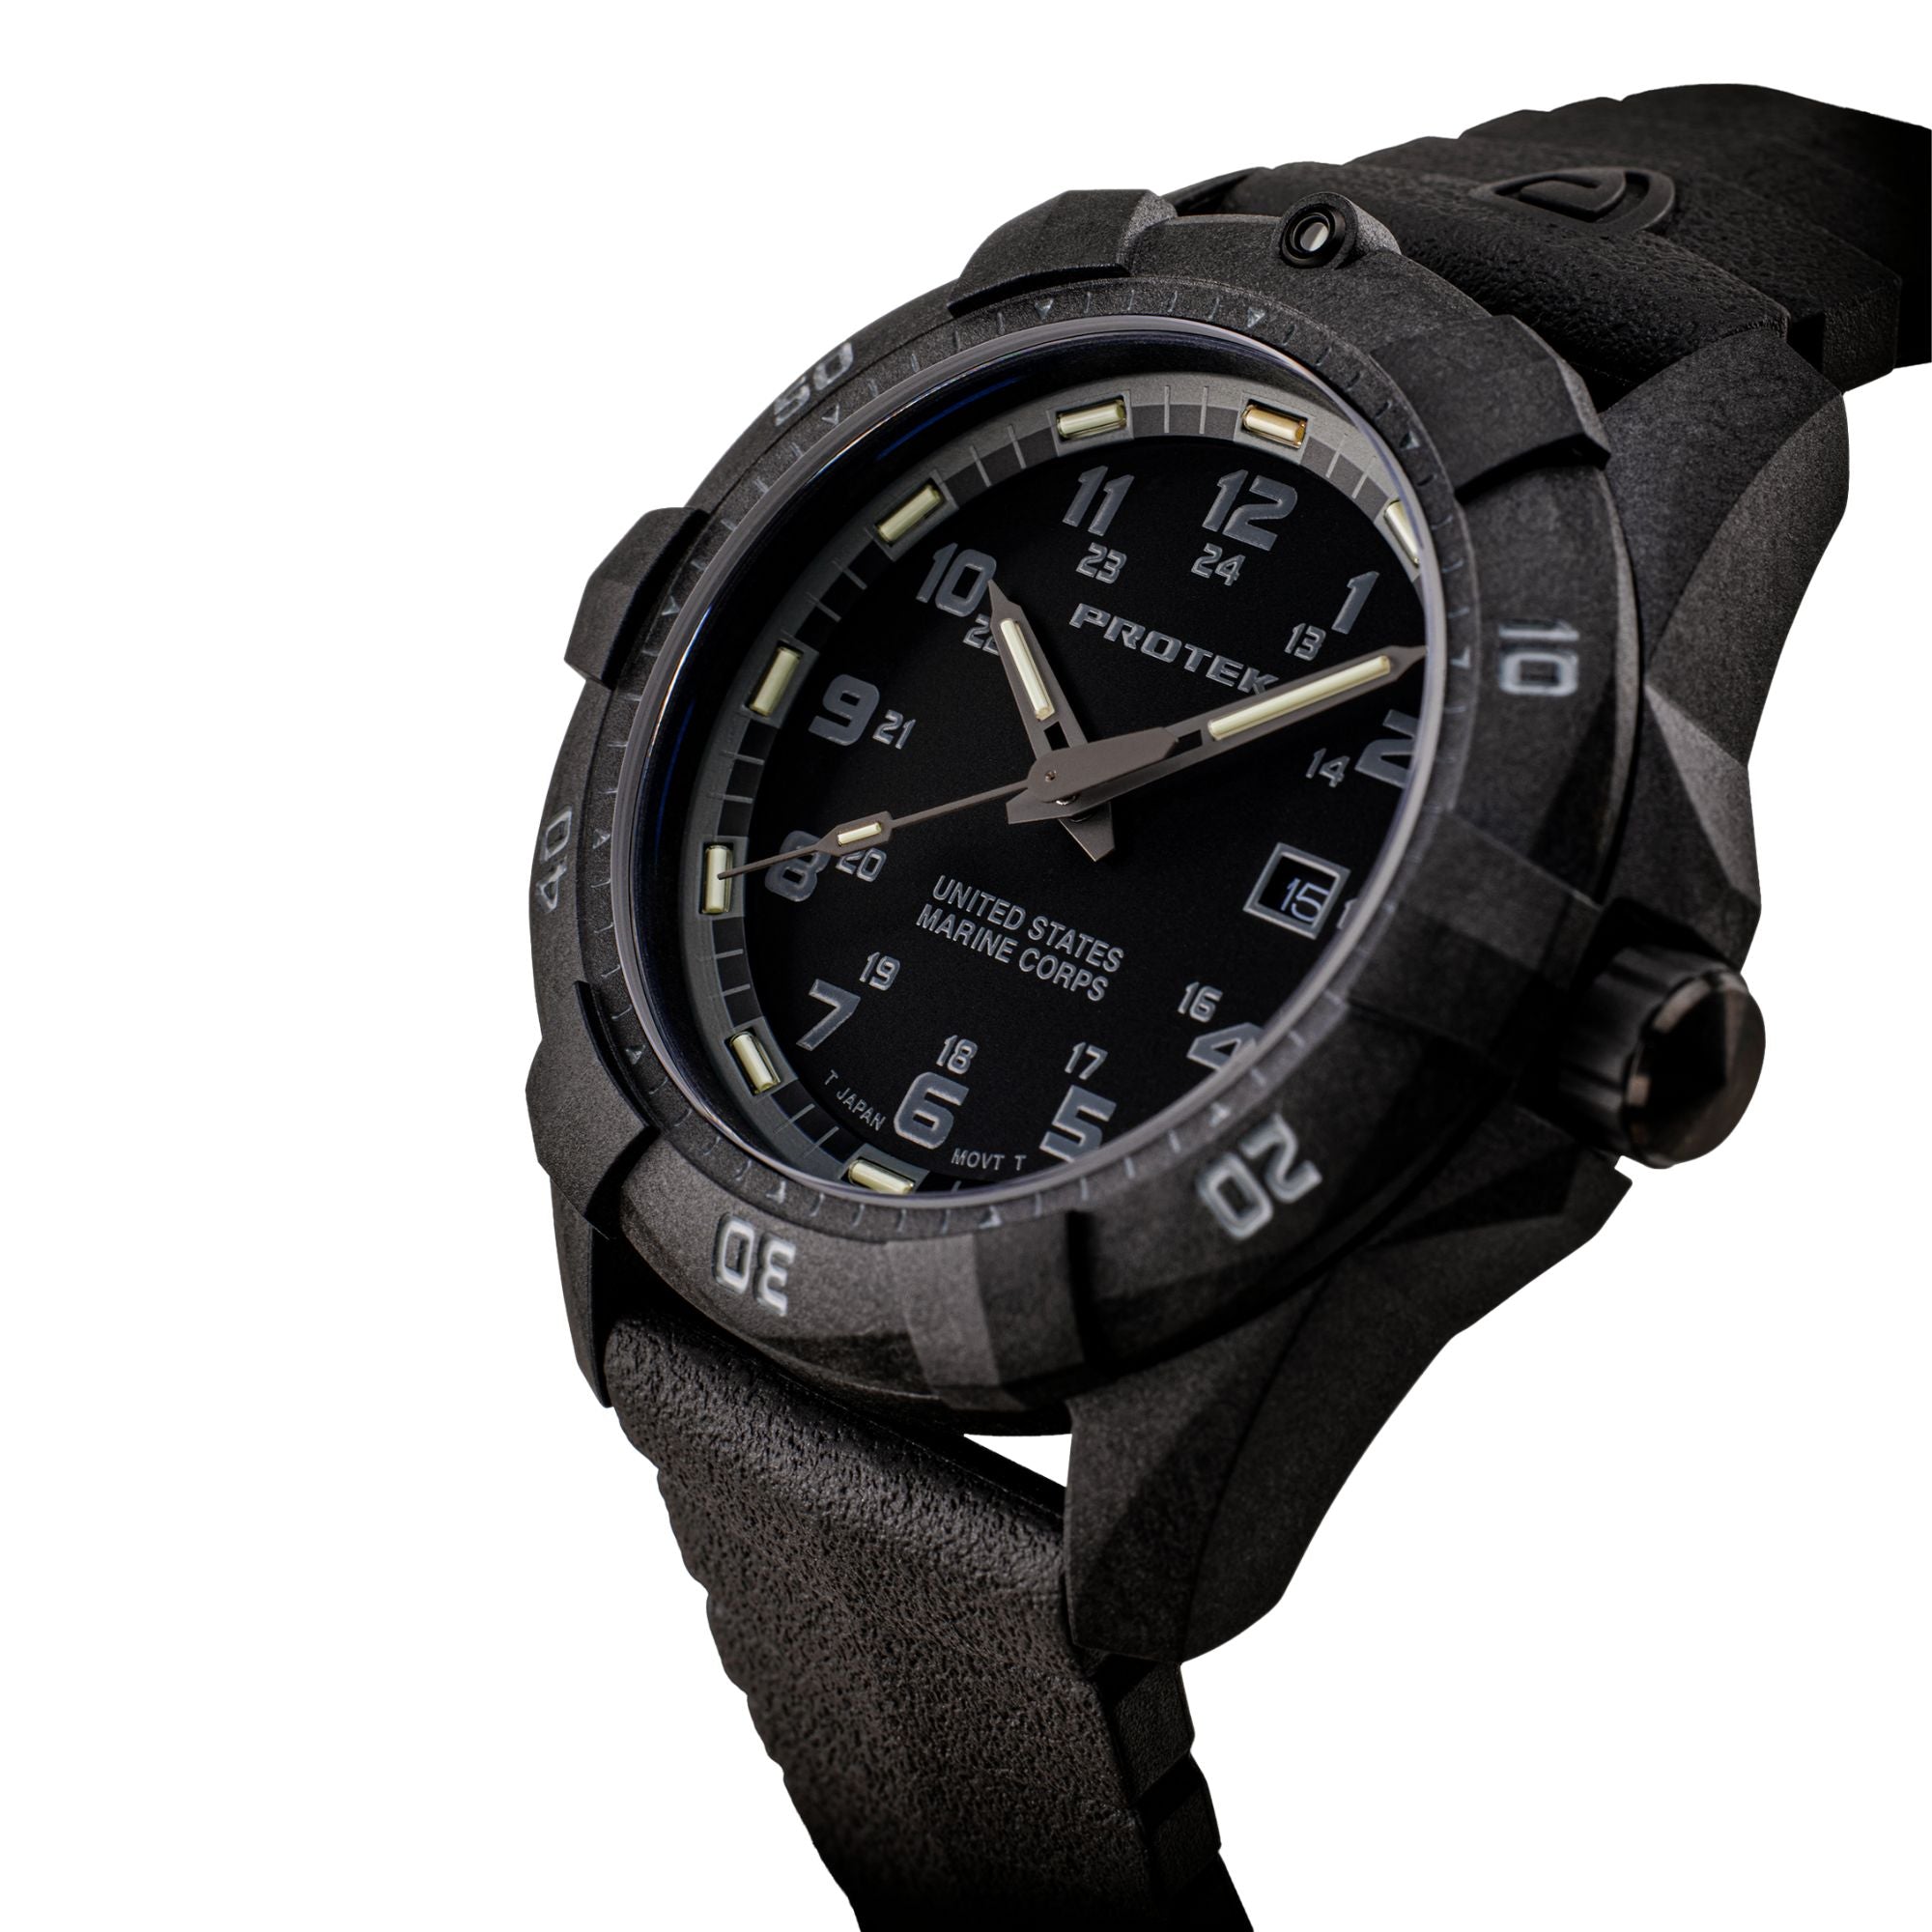 ProTek USMC Carbon Composite Dive Watch - Carbon/Blackout (Black Band)